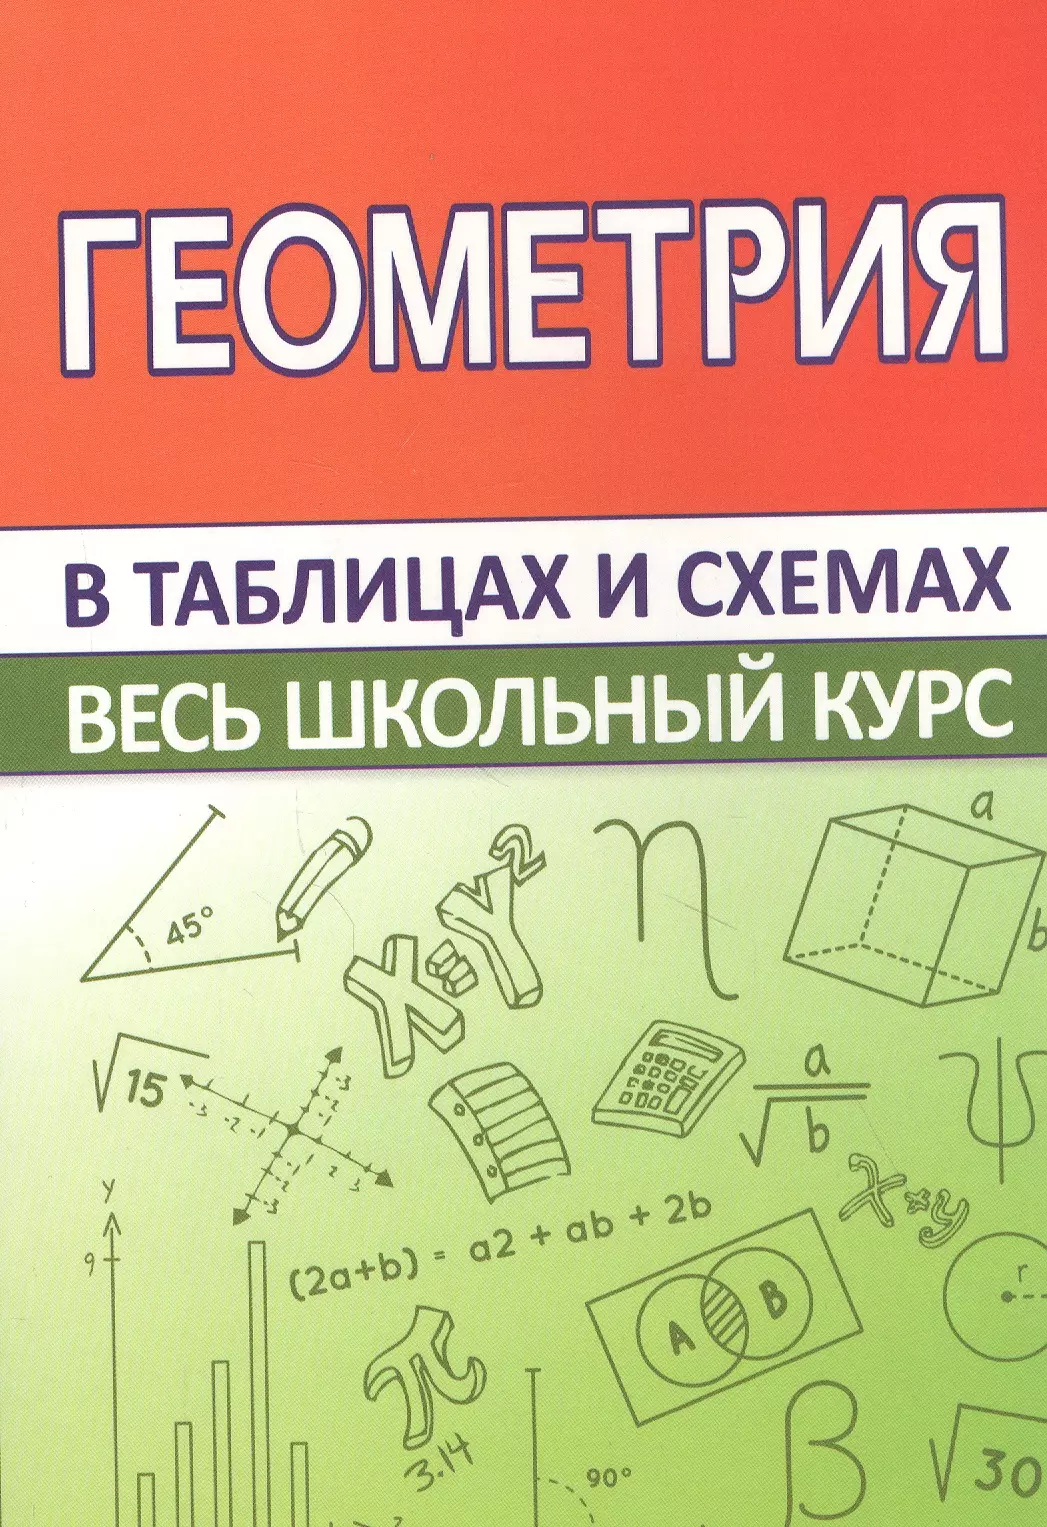 Мошкарева С. М. - Геометрия. Весь школьный курс в таблицах и схемах